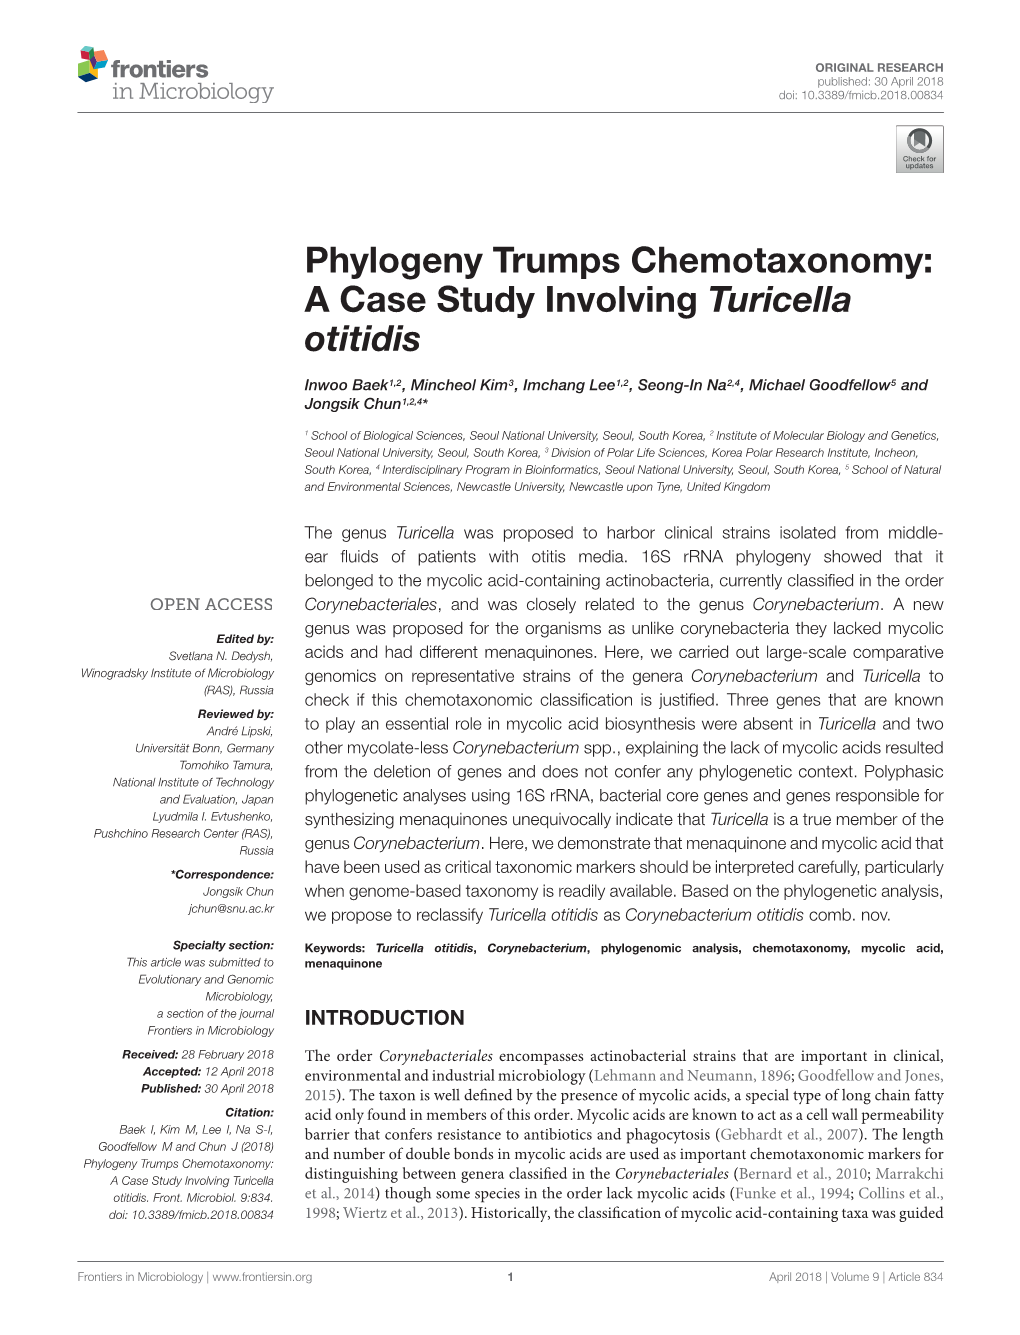 Phylogeny Trumps Chemotaxonomy: a Case Study Involving Turicella Otitidis